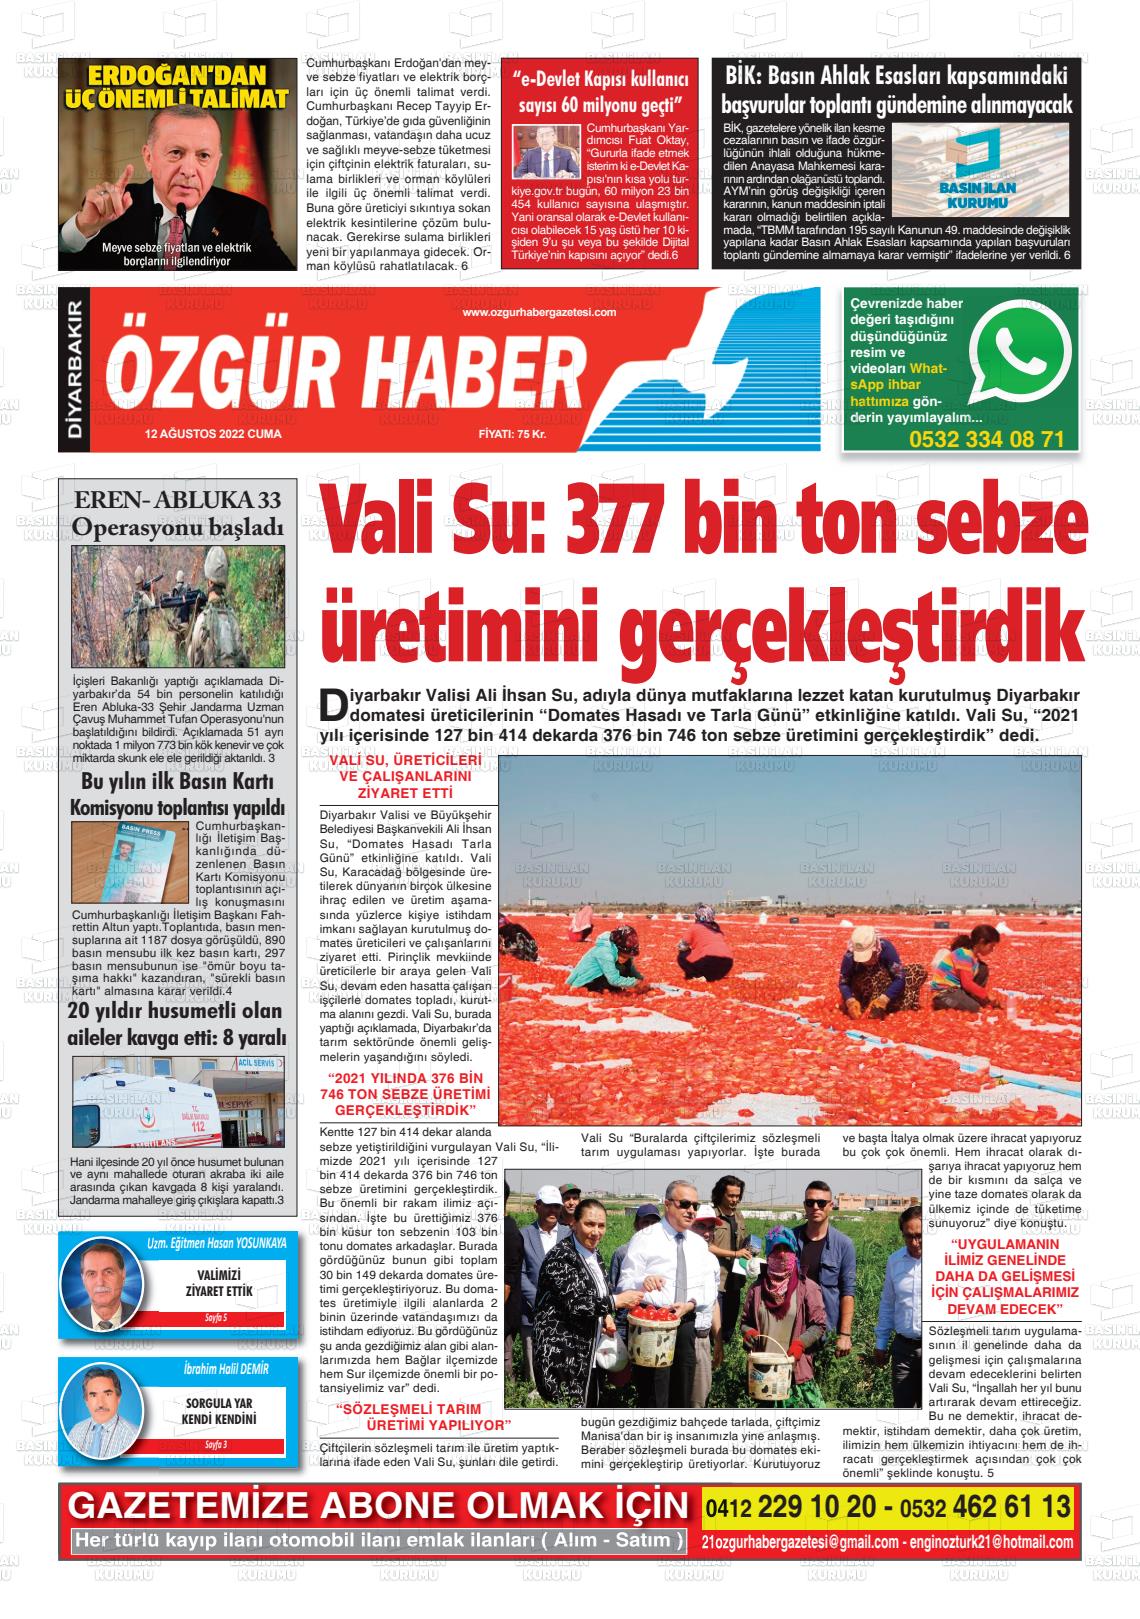 12 Ağustos 2022 Özgür Haber Gazete Manşeti